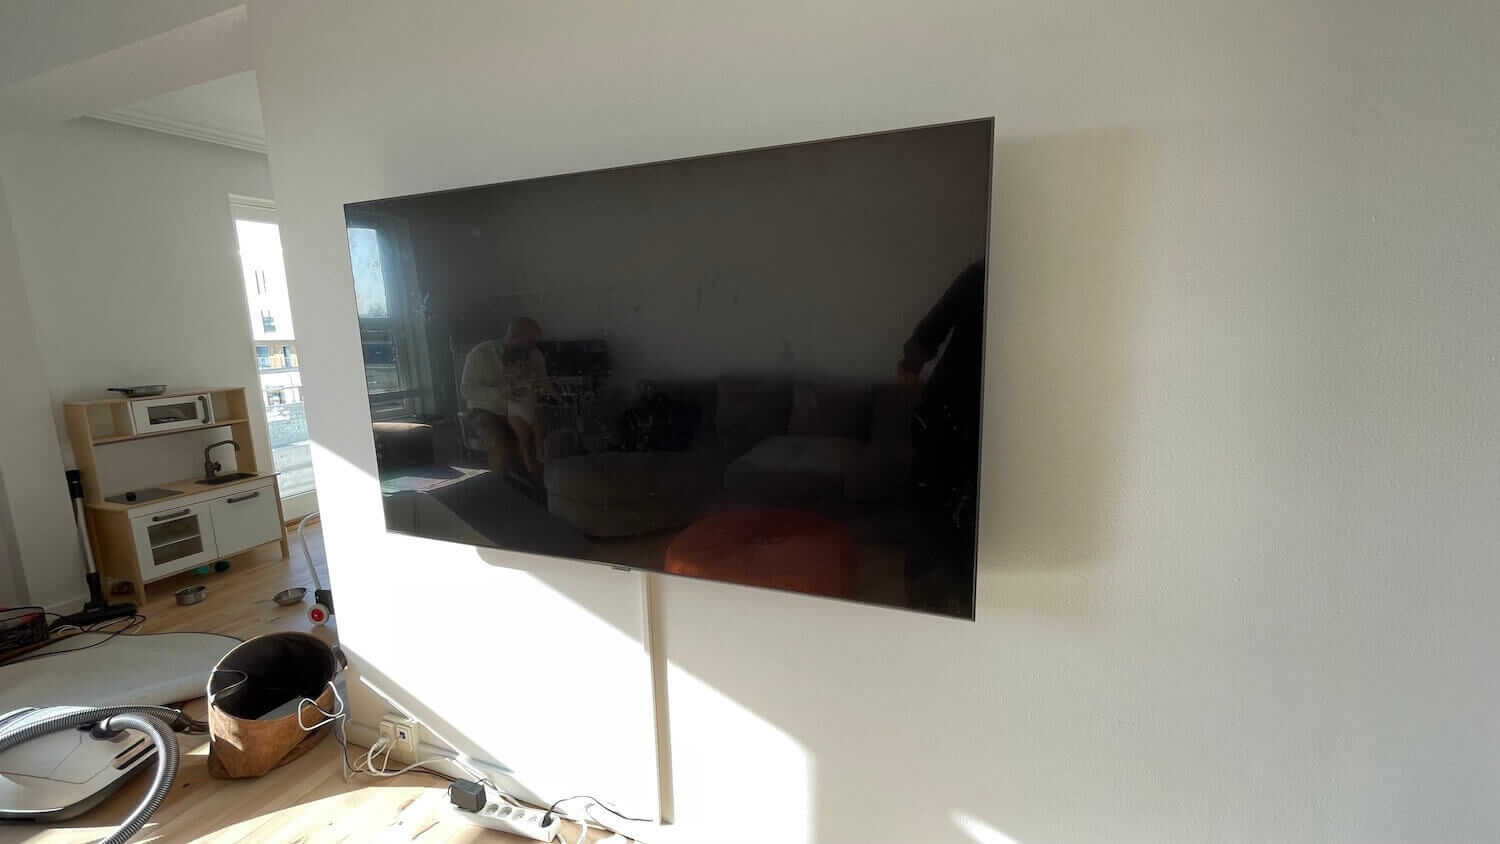 Væg-montering af Samsung TV på gipsvæg